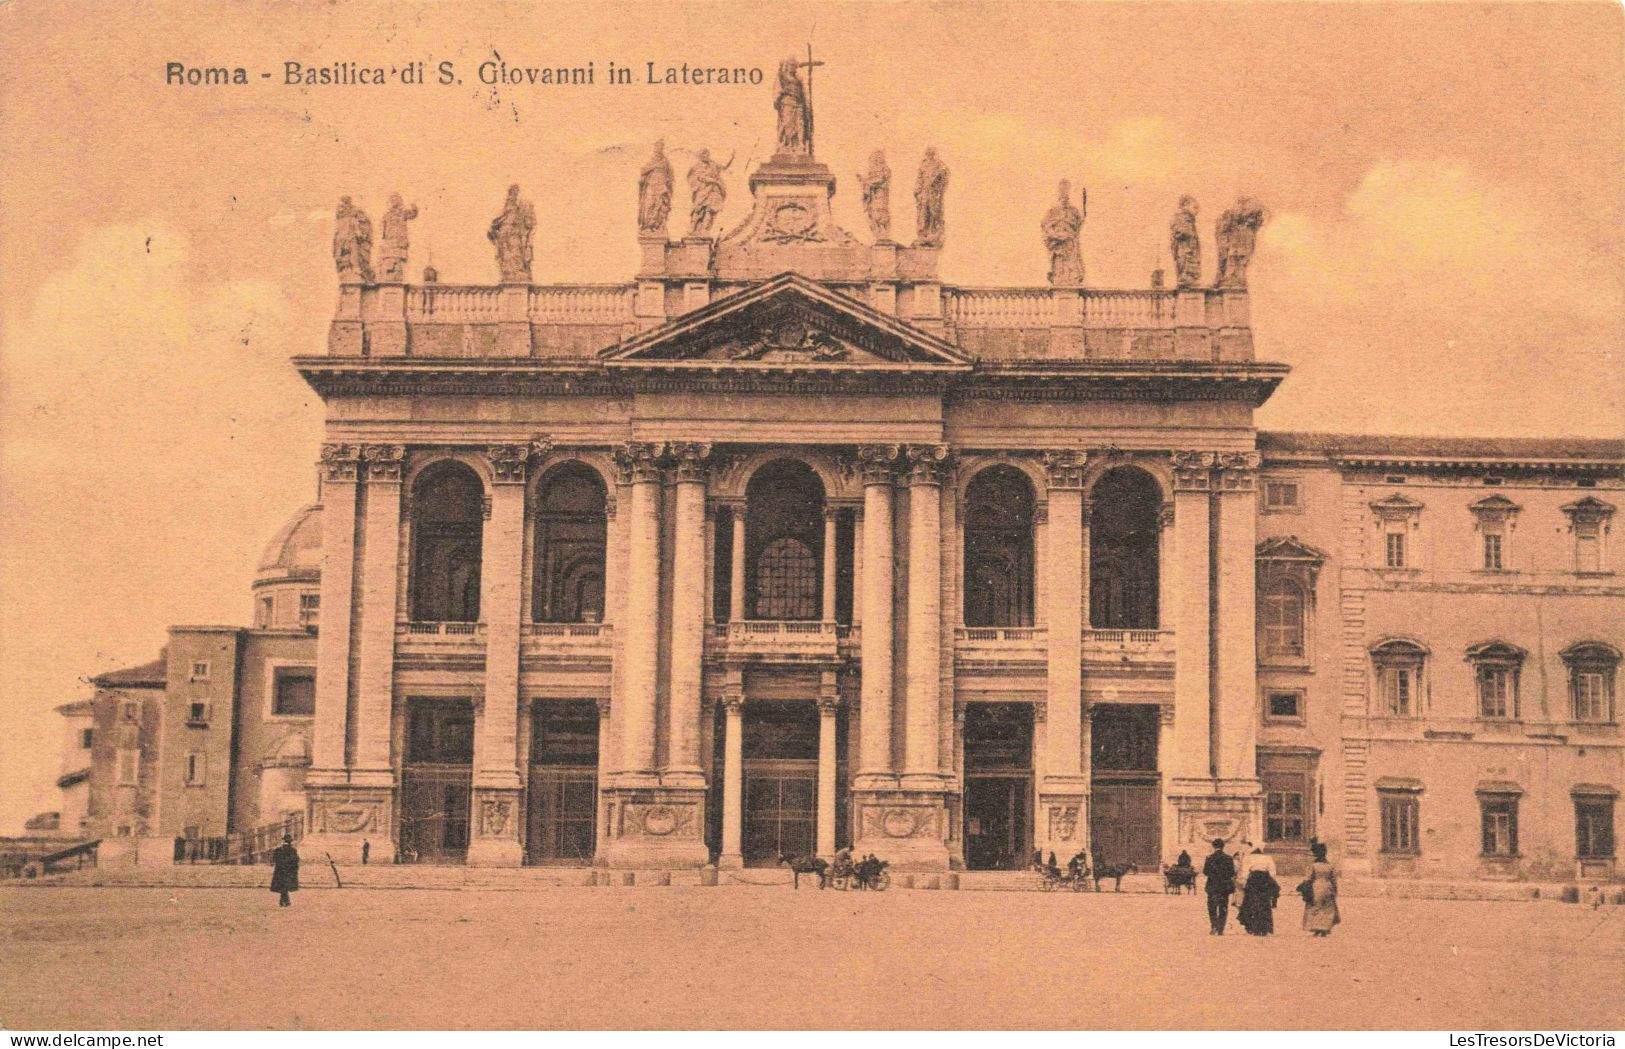 ITALIE - Roma - Basilica Di S Giovanni In Laterano - Animé - Carte Postale Ancienne - Andere Monumente & Gebäude